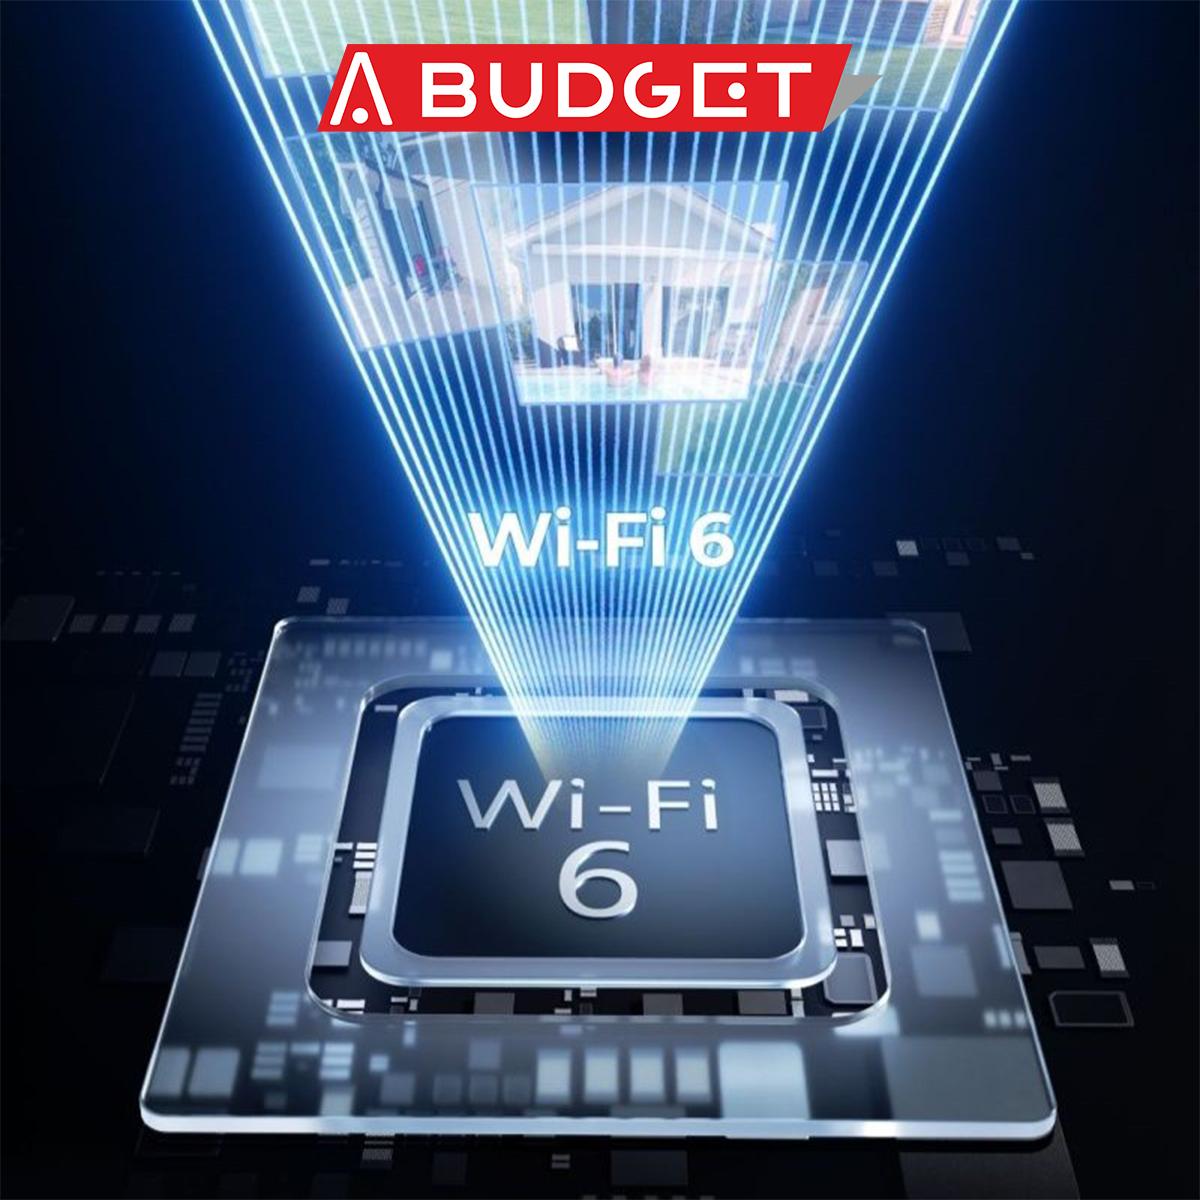 WiFi 6 technológia a biztonsági kamerák aspektusából!